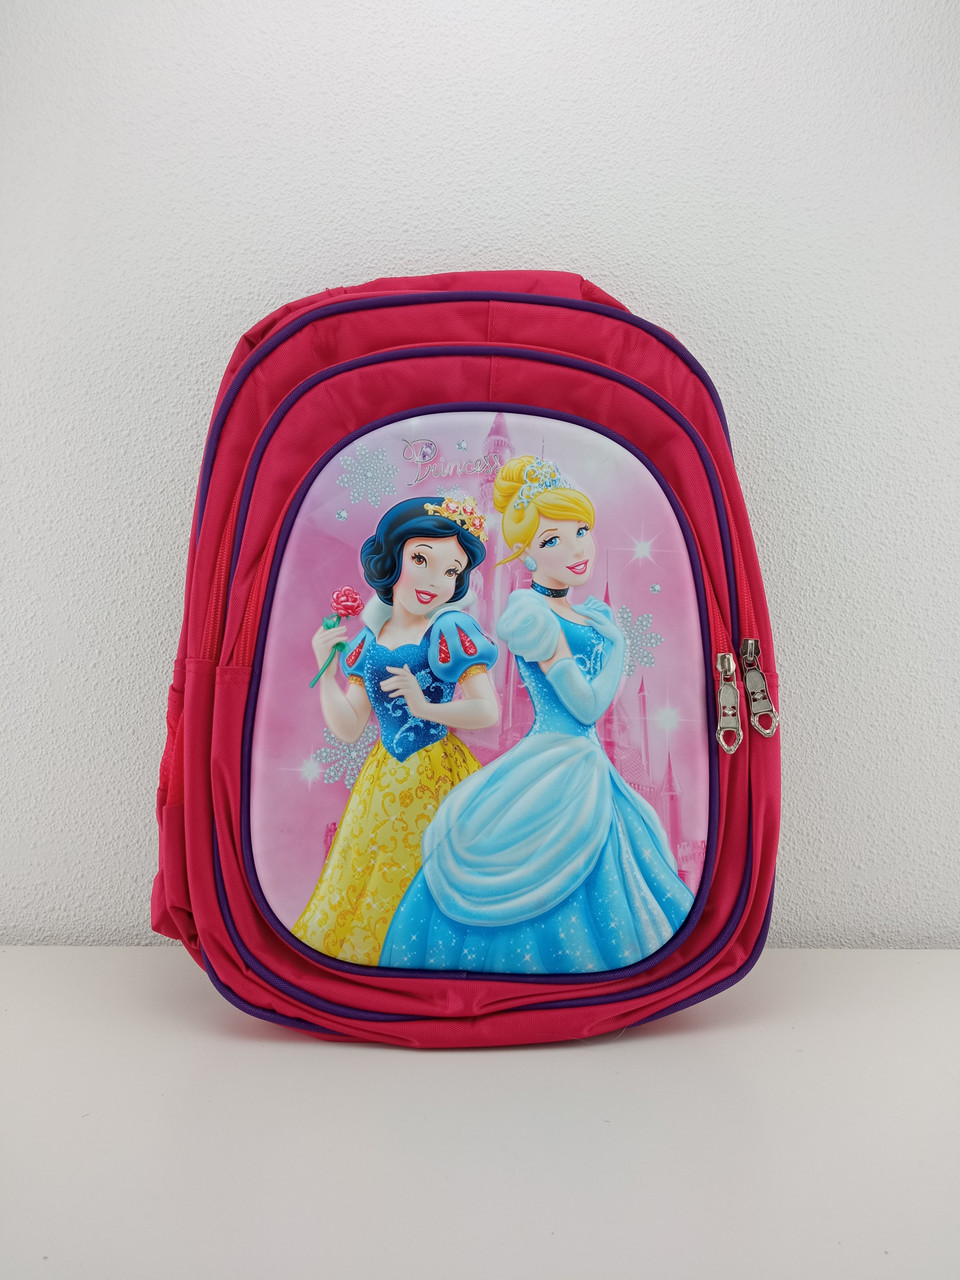 Детский рюкзак для девочки "Принцессы Disney" красный розовый 38 х 27 см, фото 1